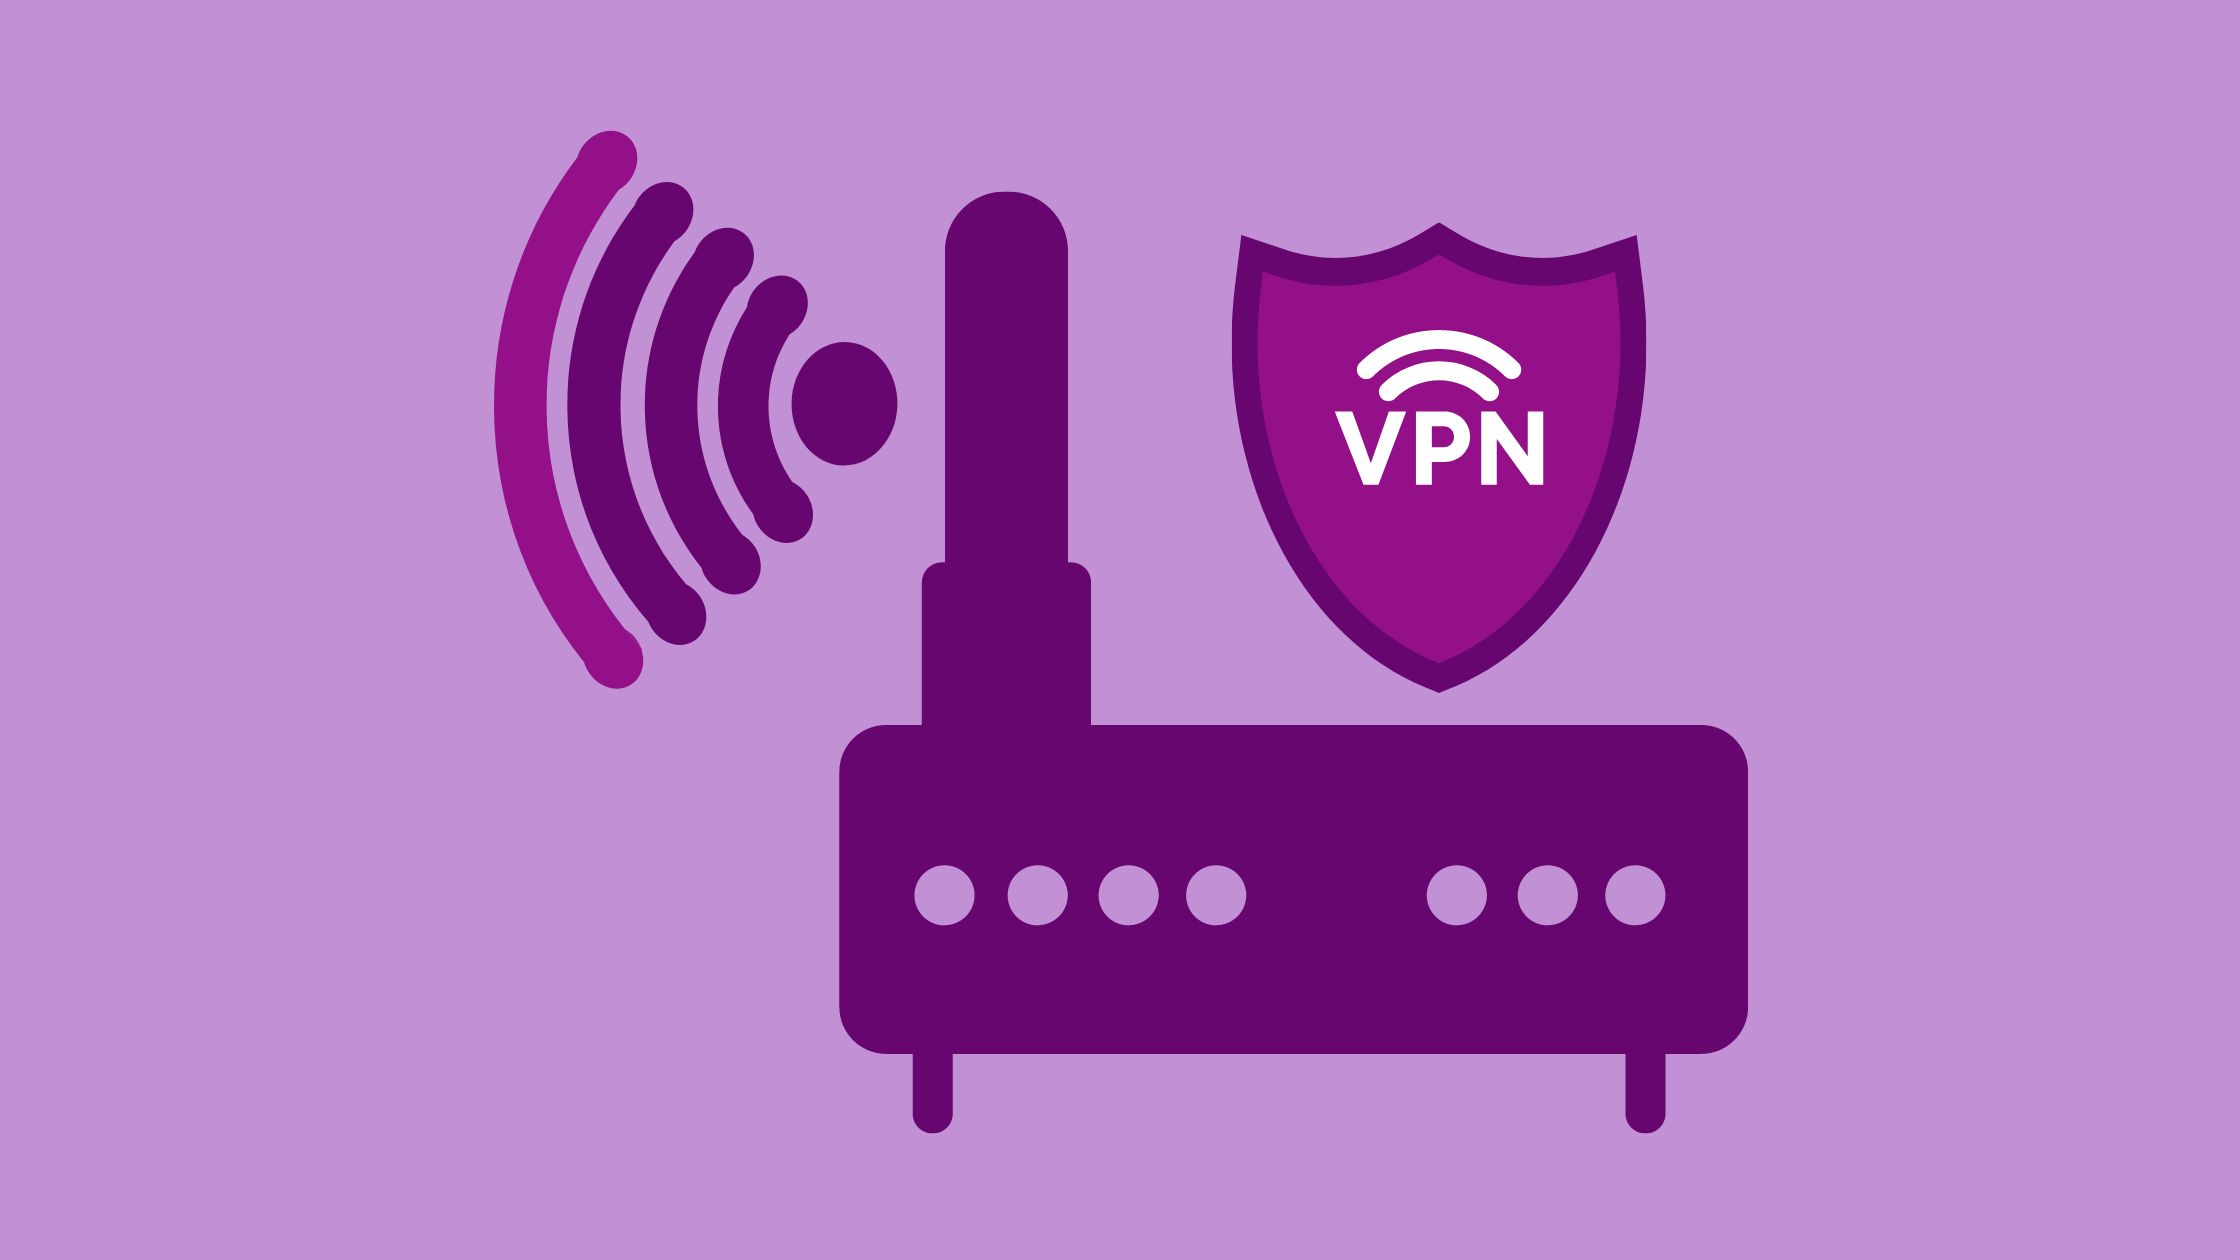 Setup a VPN on Router